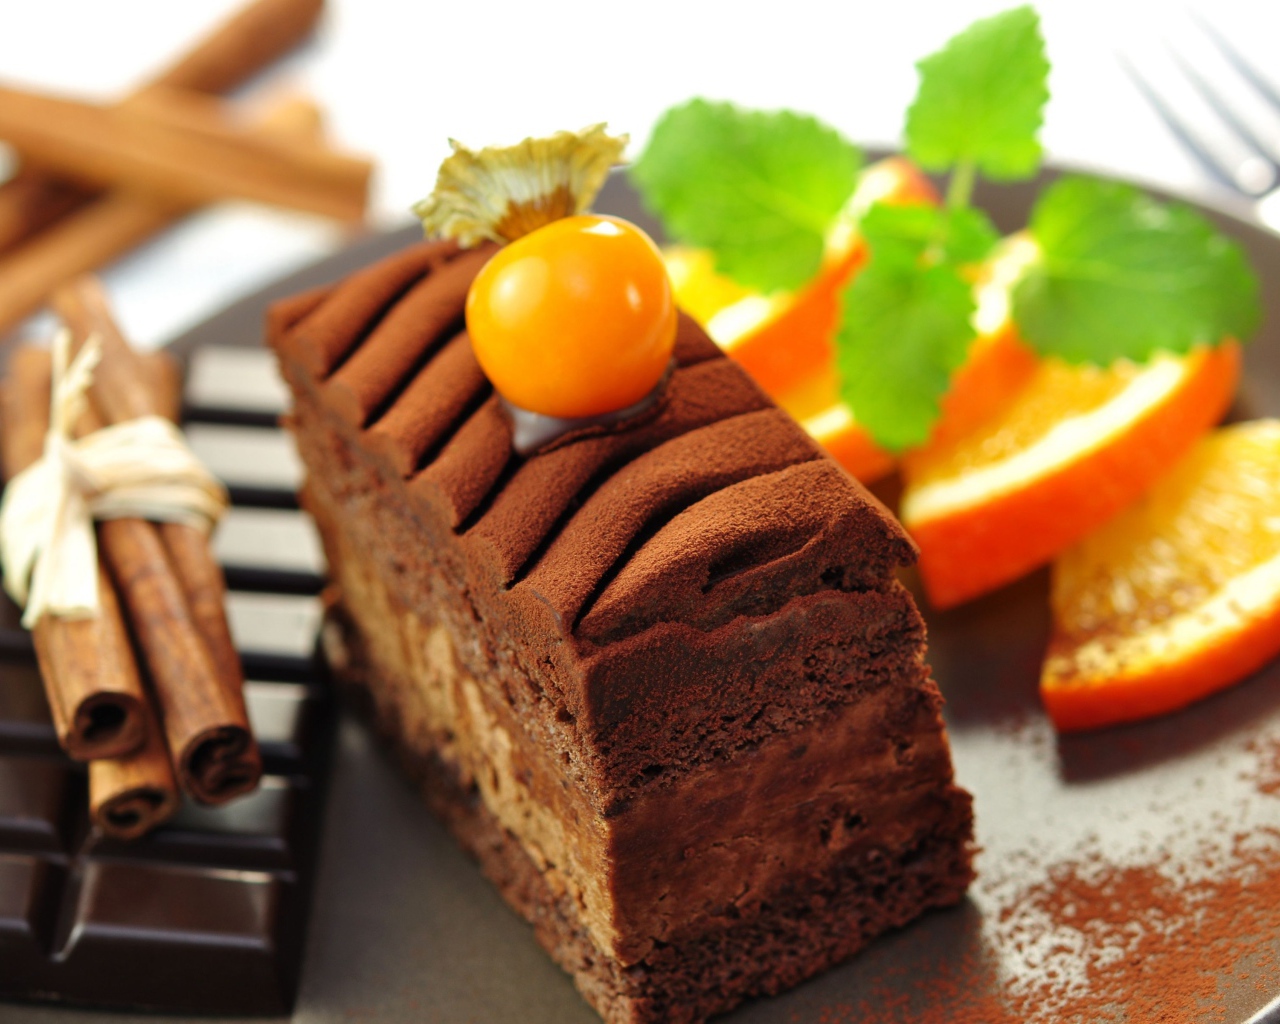 Шоколадное пирожное с корицей и шоколадом 